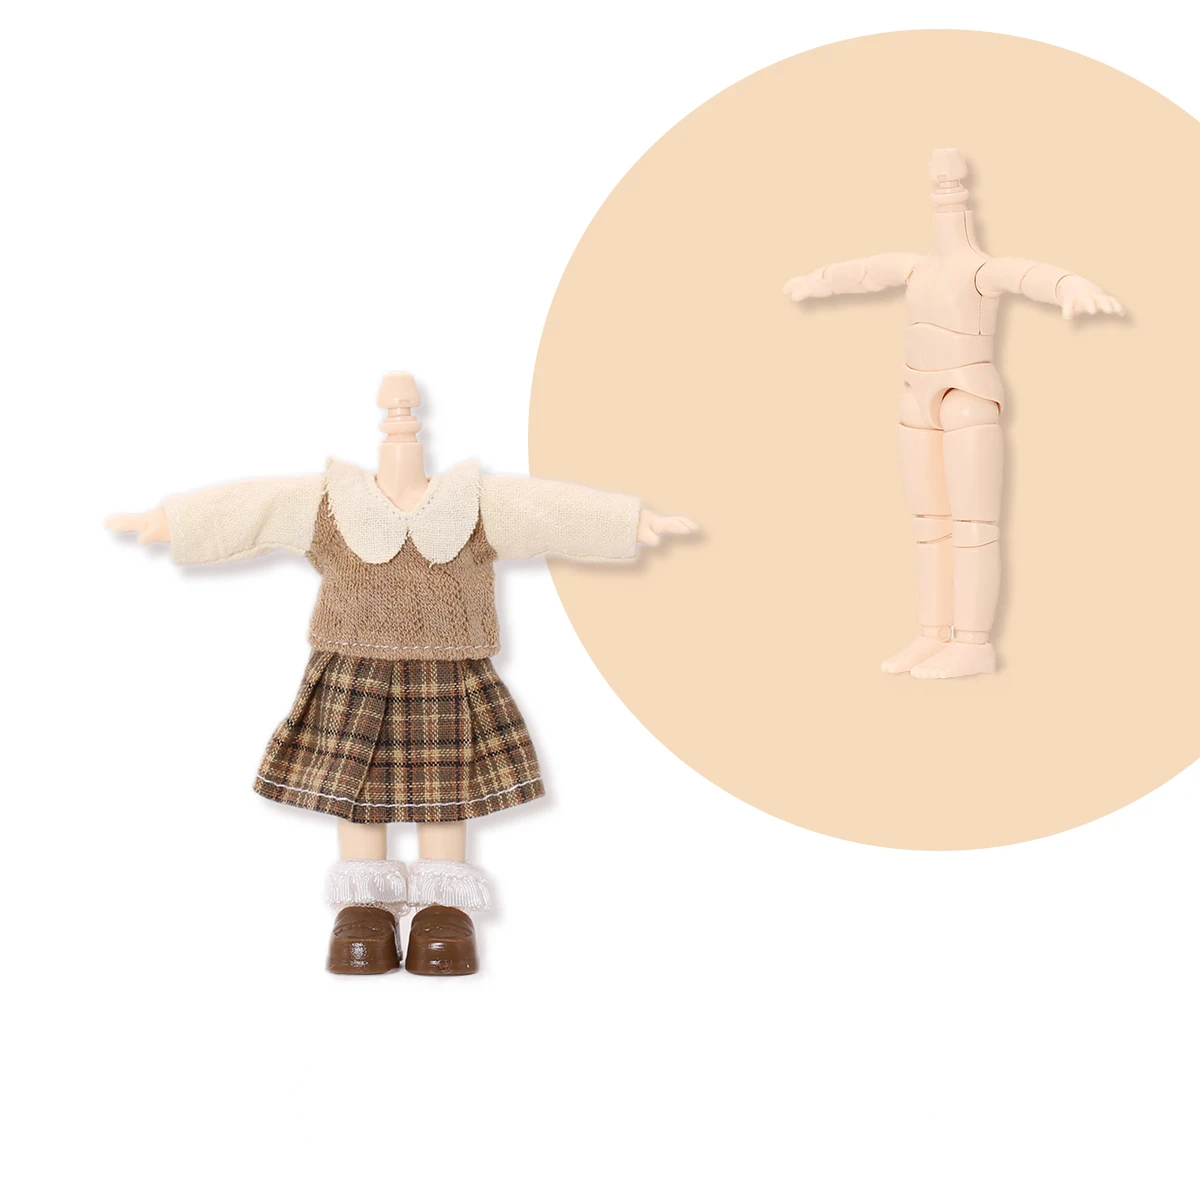 Roupas e acessórios de boneca para meninas – Jk Roupas de boneca